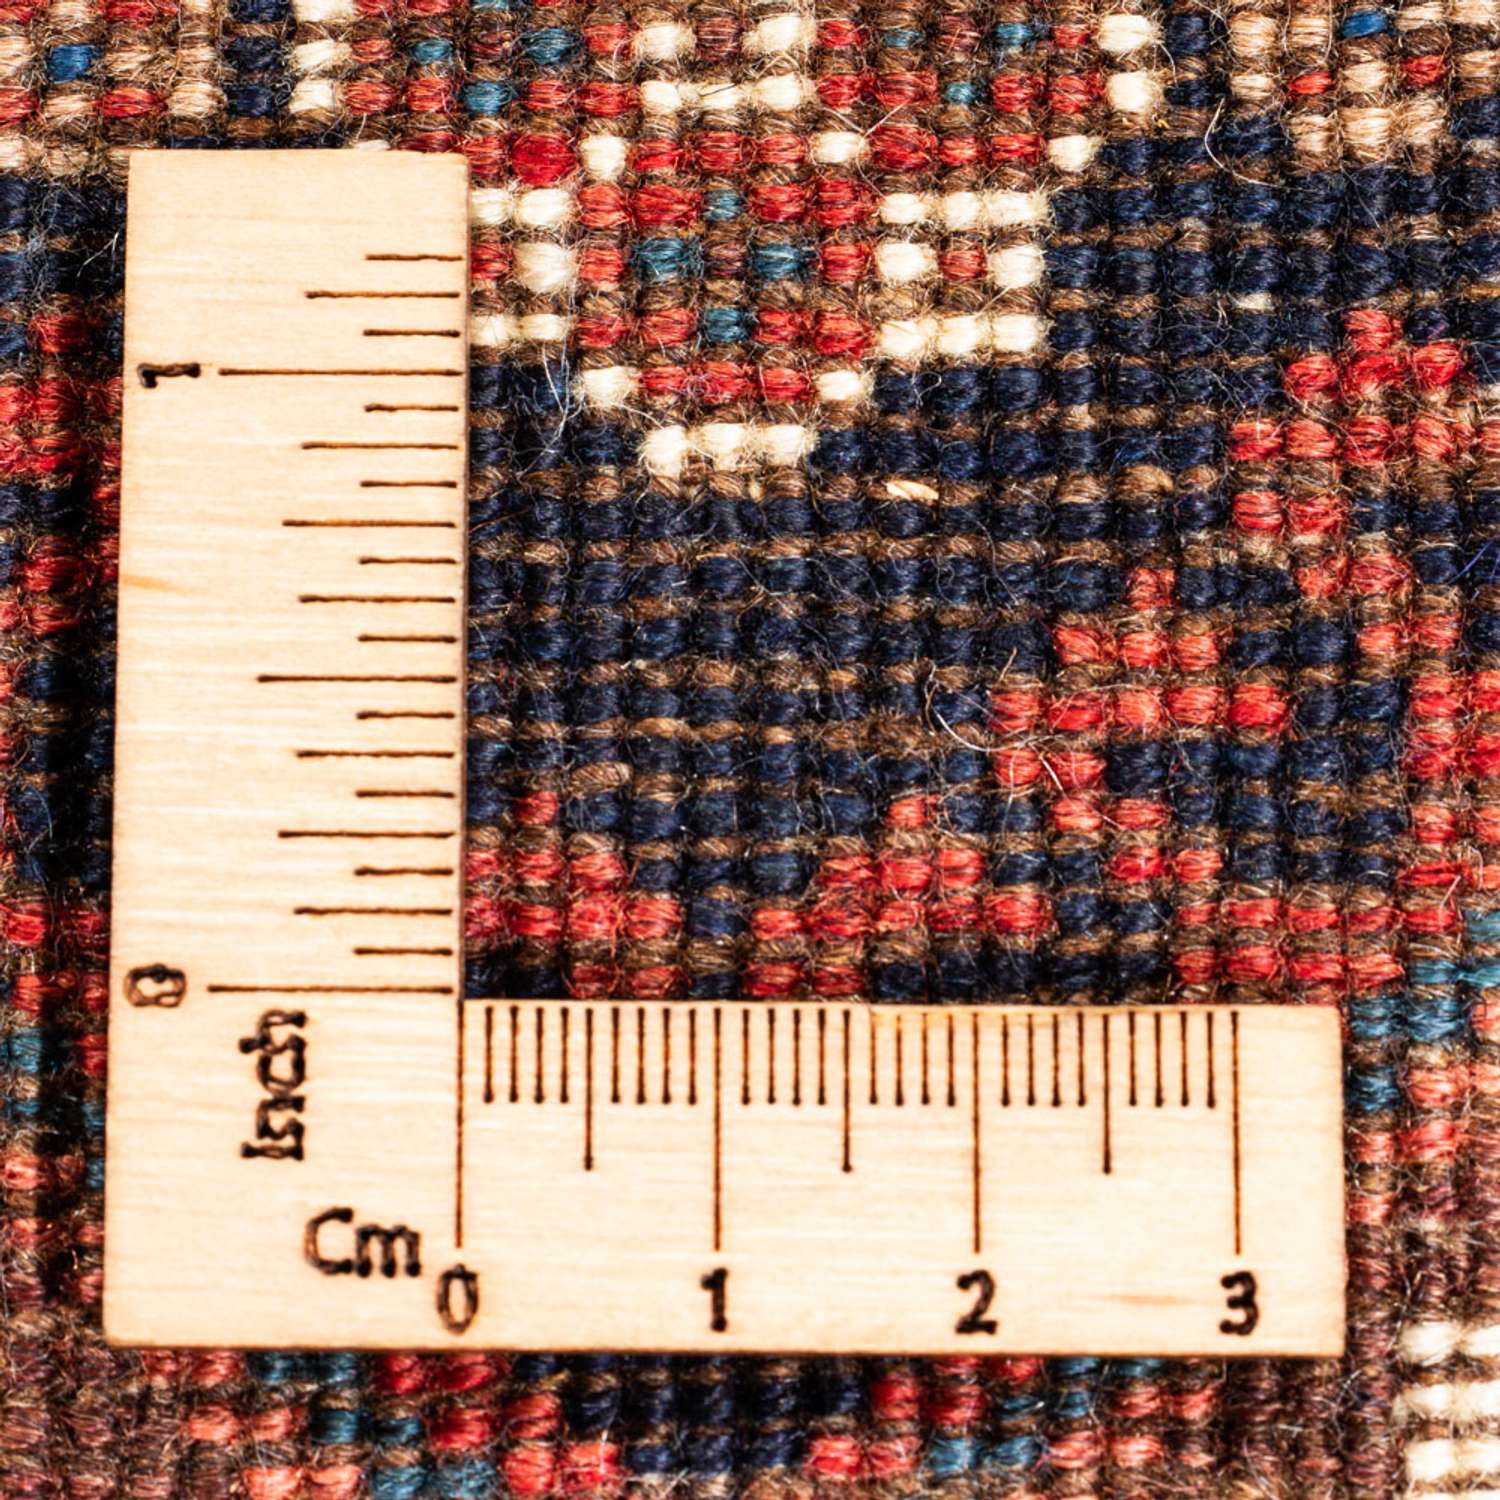 Biegacz Perski dywan - Nomadyczny - 190 x 85 cm - kremowy